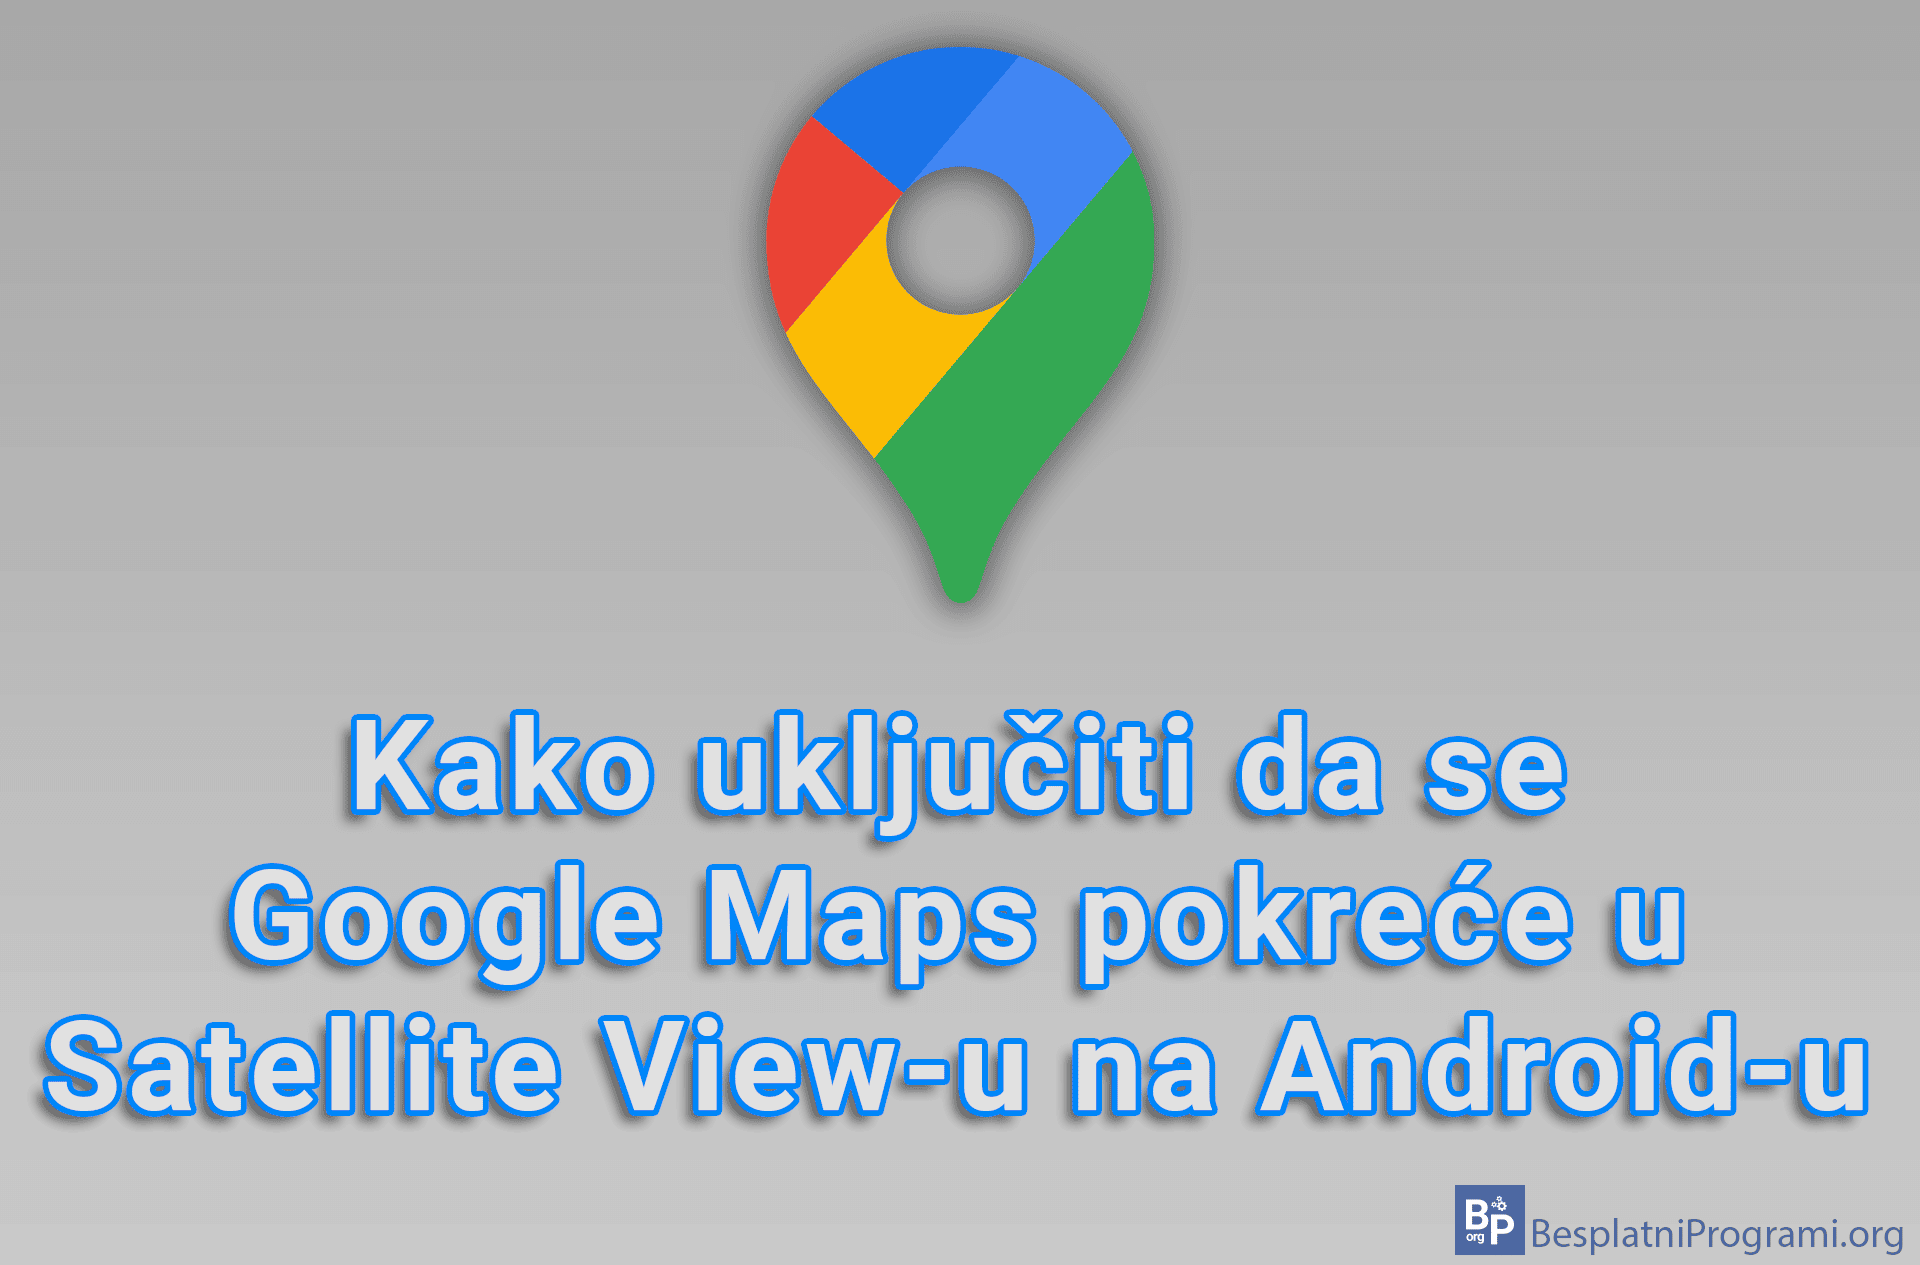 Kako uključiti da se Google Maps pokreće u Satellite View-u na Android-u